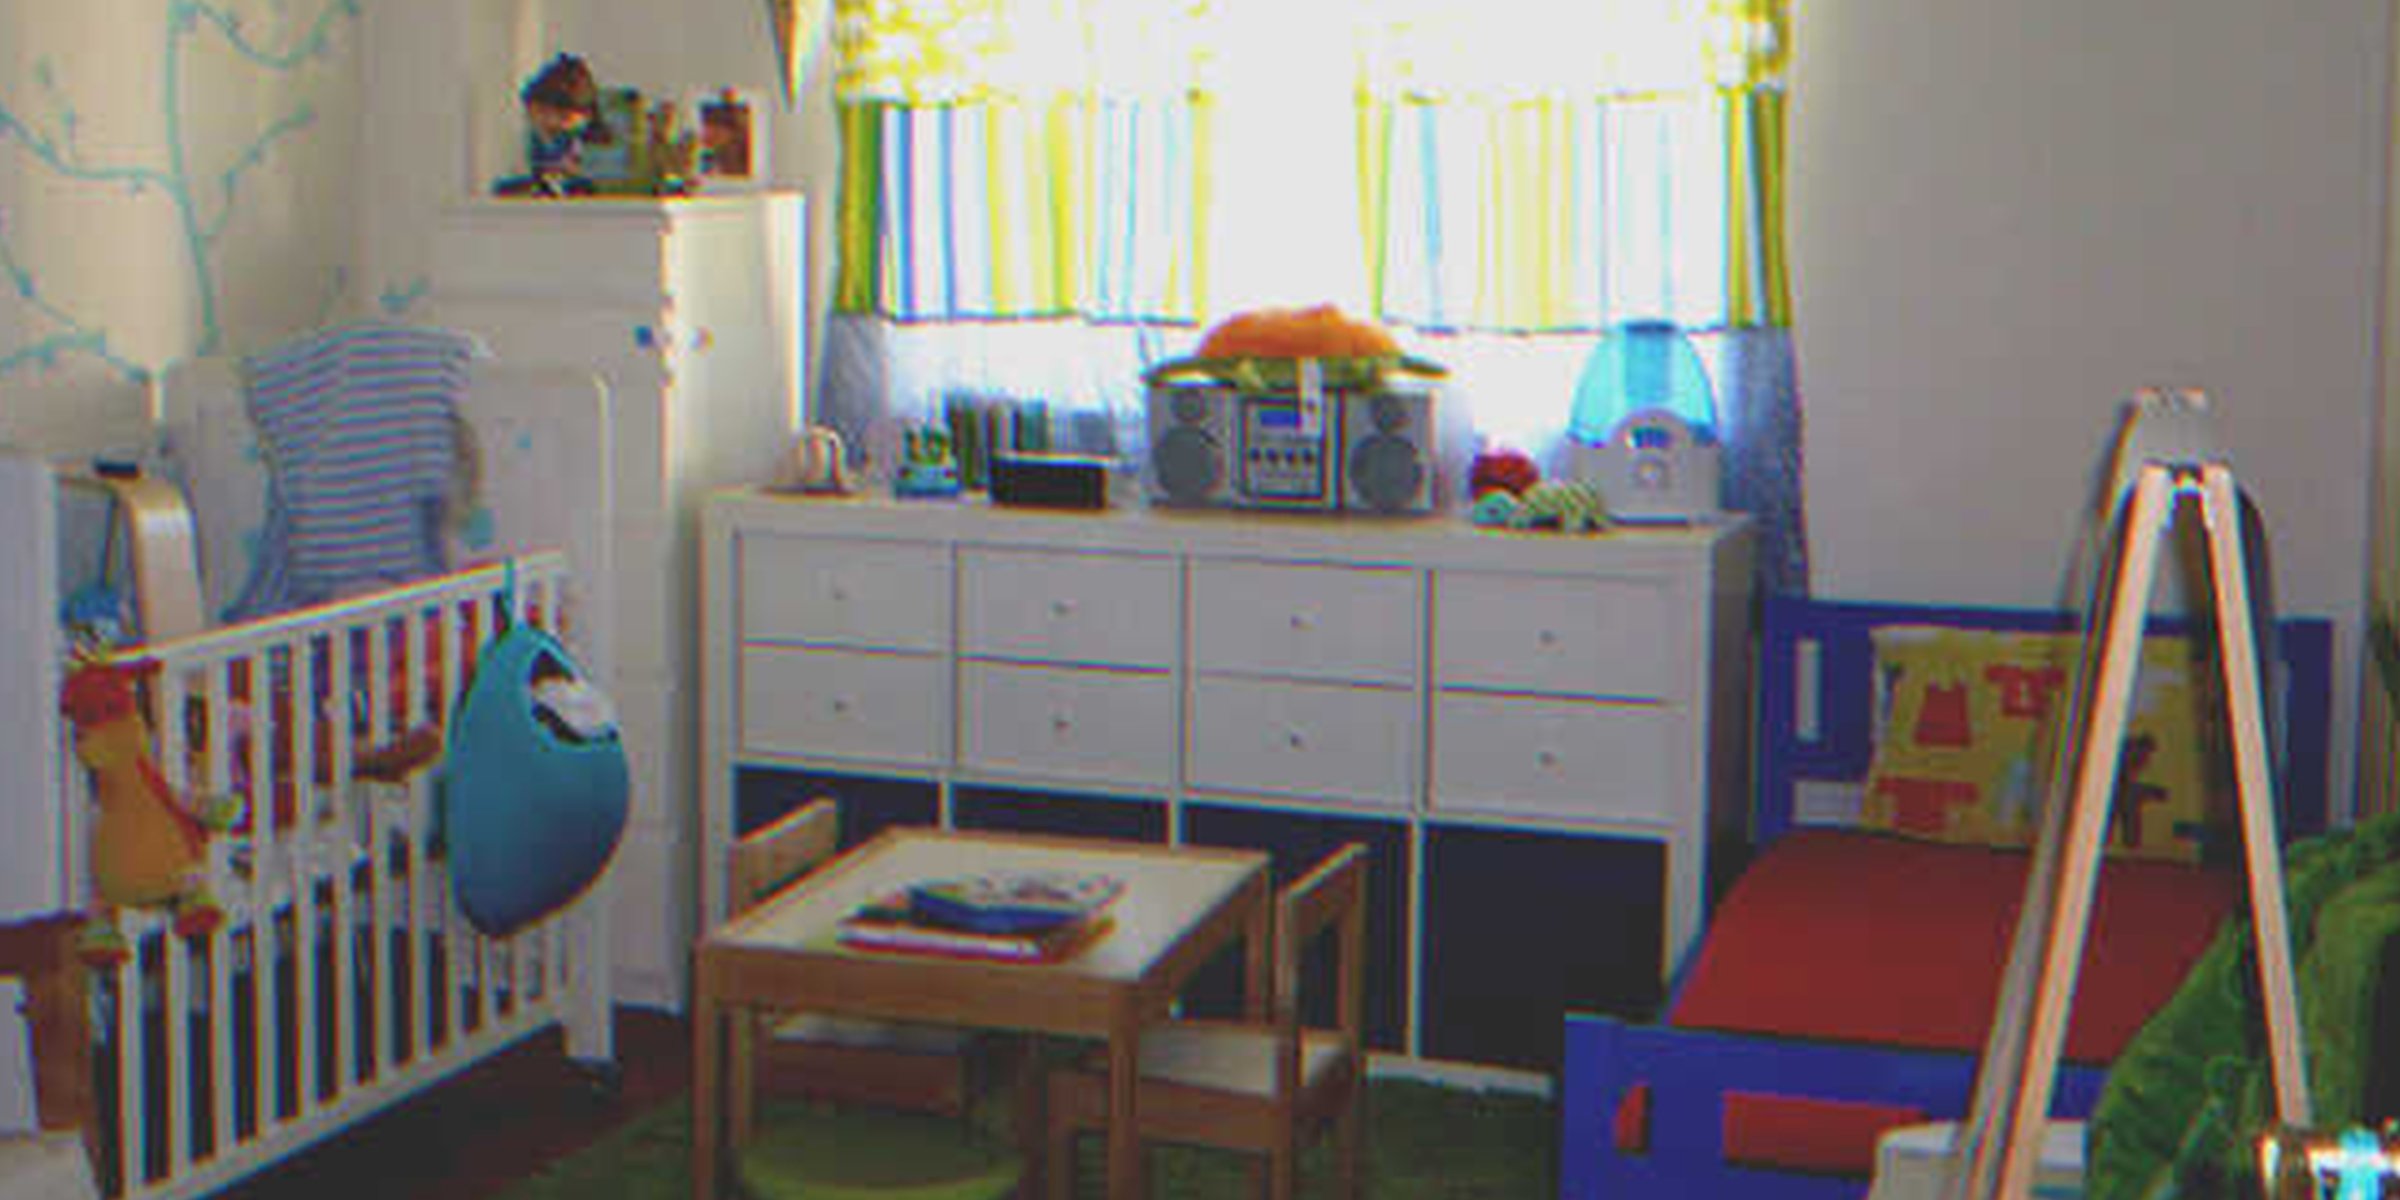 Ein Kinderzimmer | Quelle: Flickr / Claudia Borralho